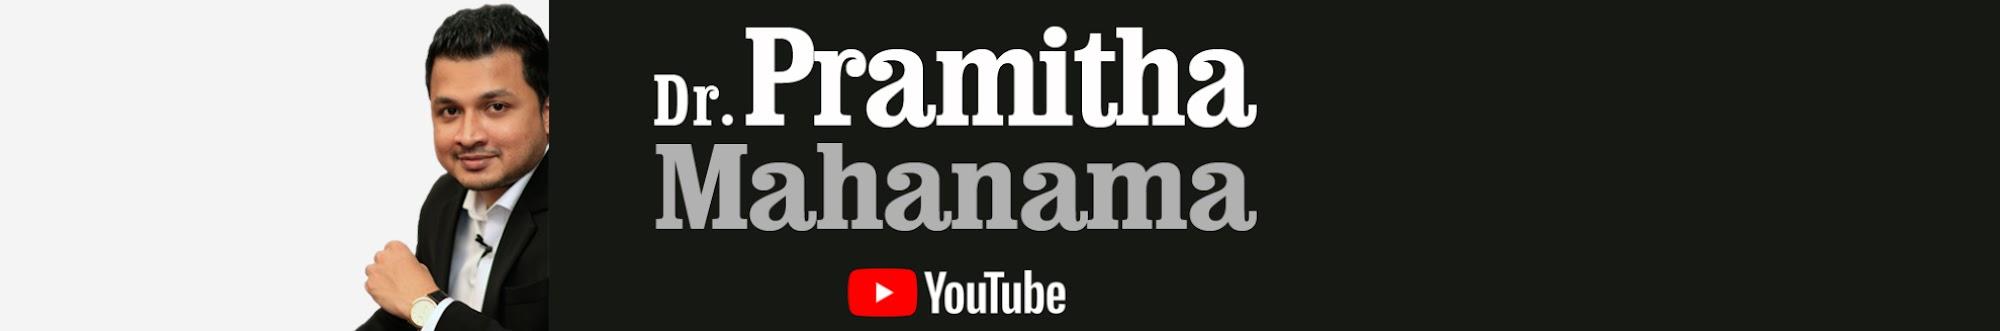 Pramitha Mahanama